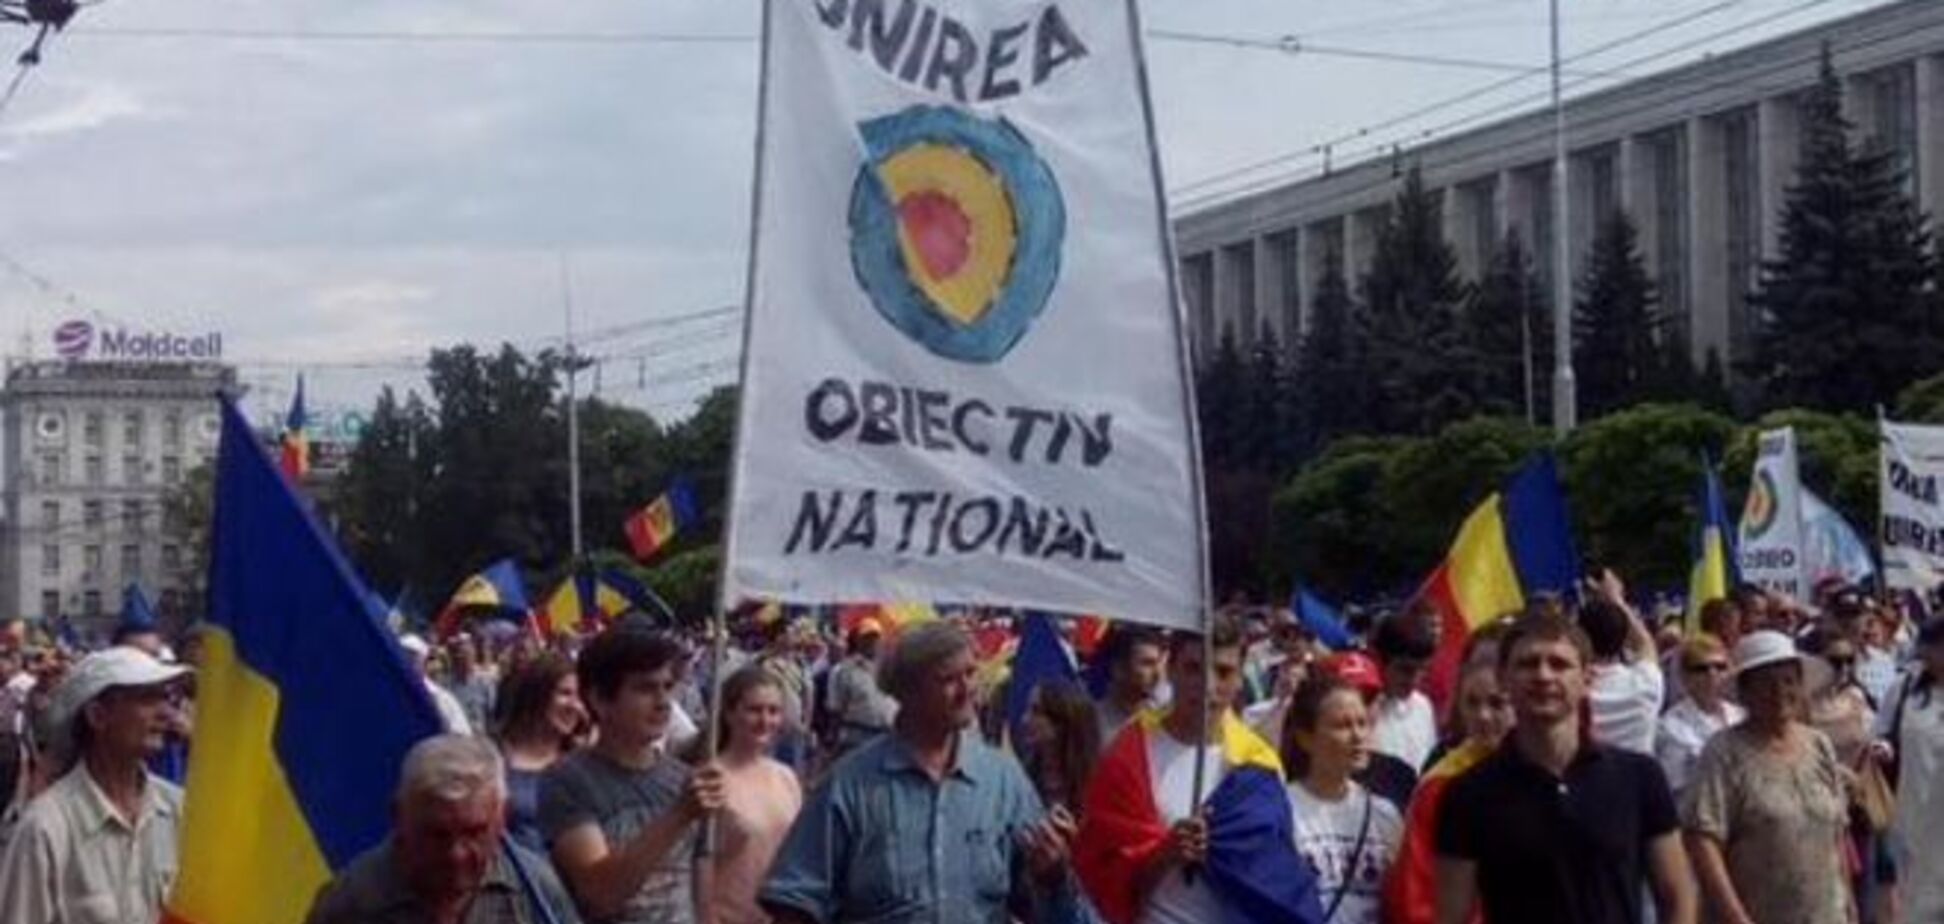 'Бухарест, рятуй!' У Кишиневі пройшов тисячний мітинг за приєднання до Румунії